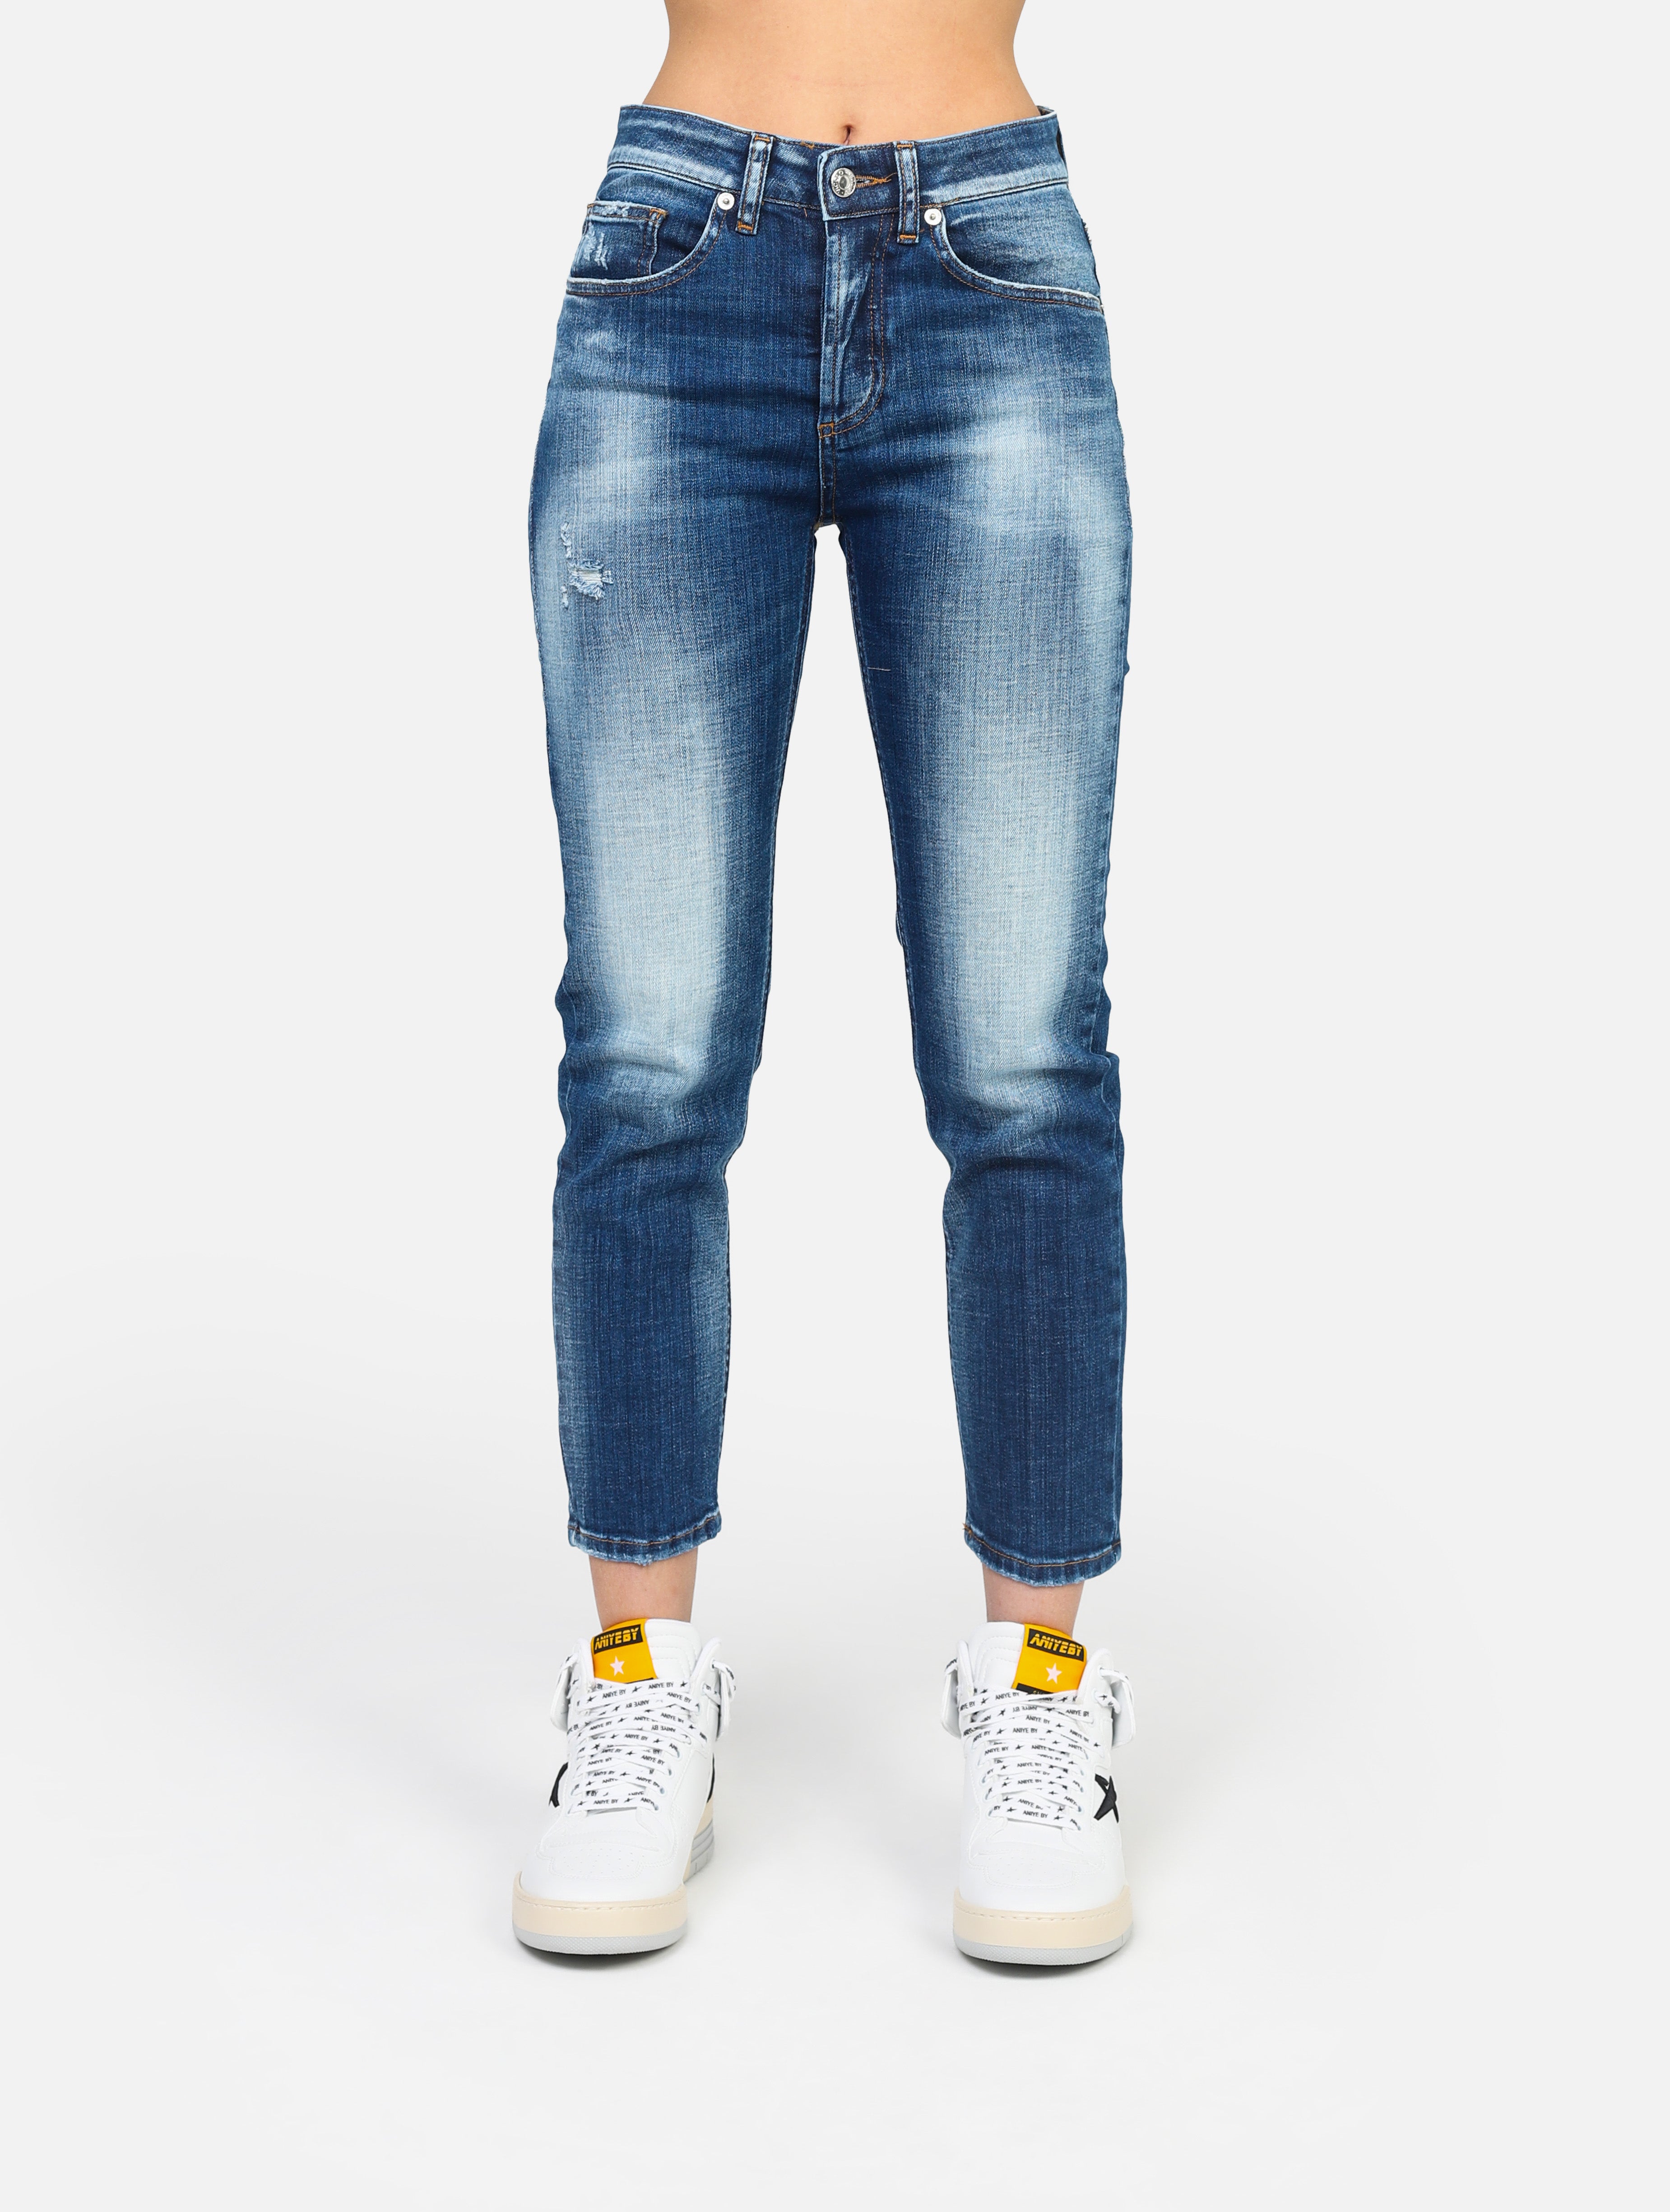 Jeans con 5 tasche daisy , slavato sul ginocchio, 1 piccola abrasione sotto la tasca, chiusura tutti bottoni -  denim donna 